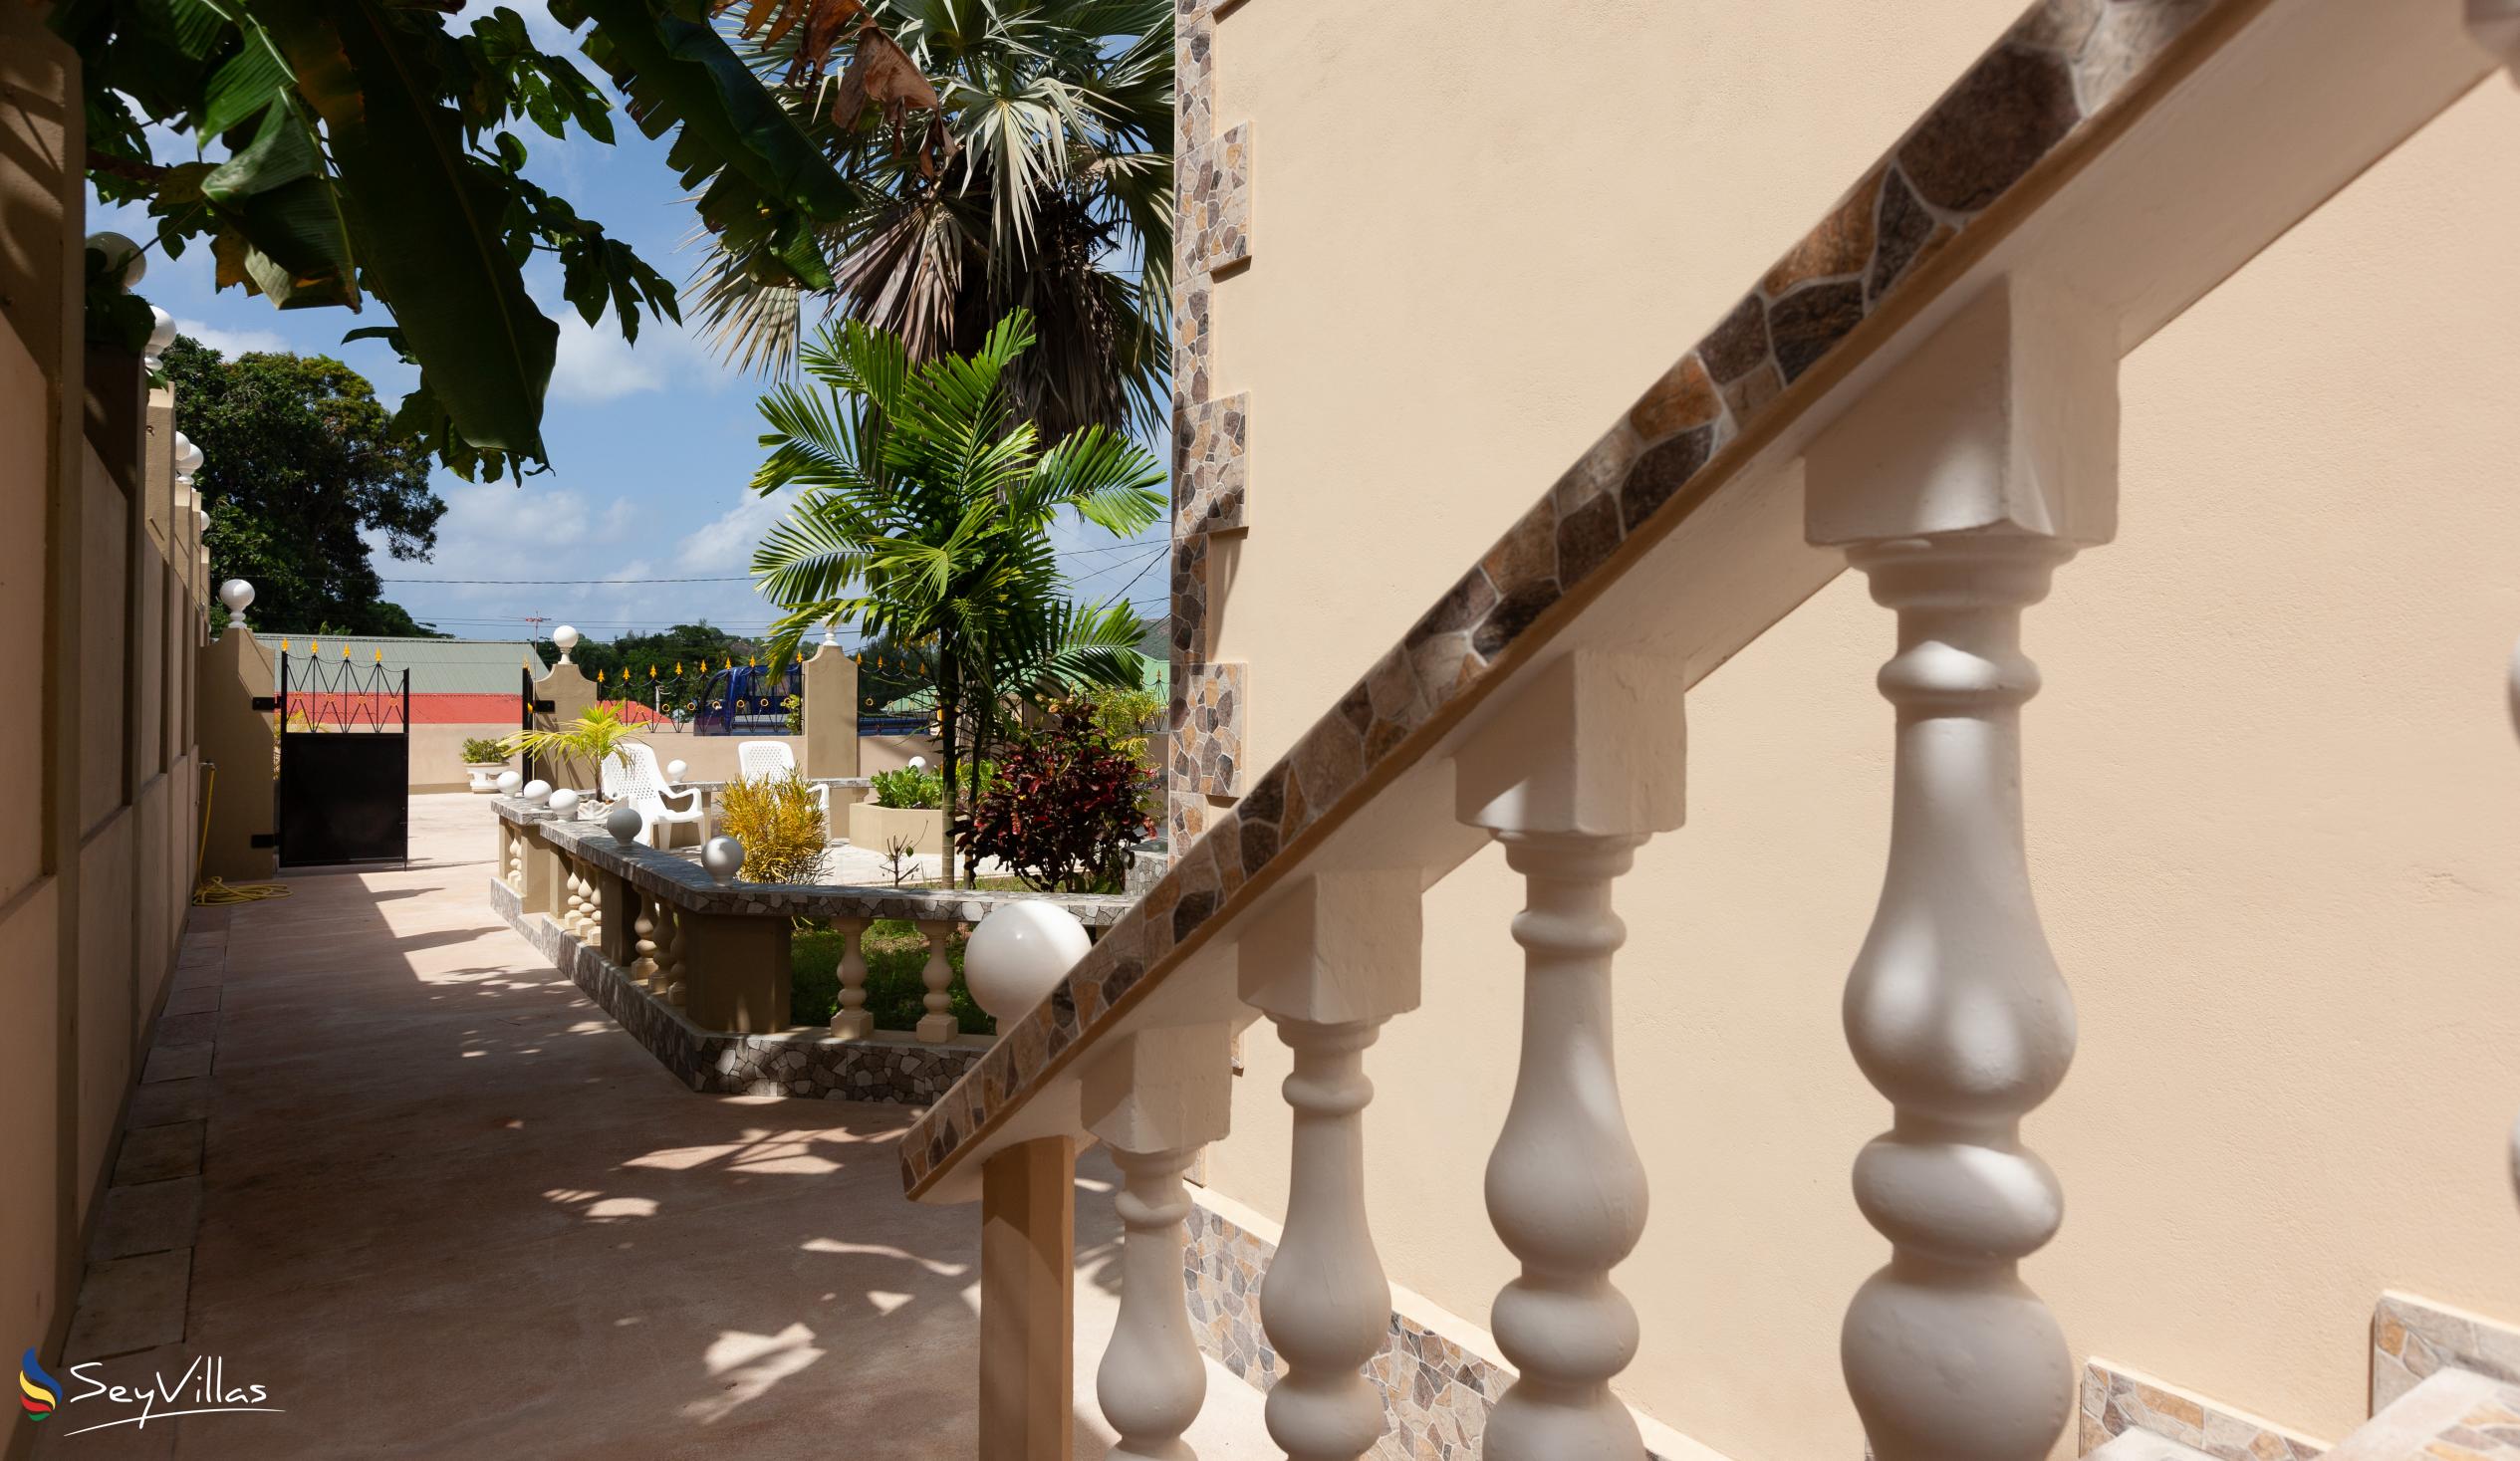 Foto 20: La Residence d'Almee - Aussenbereich - Praslin (Seychellen)